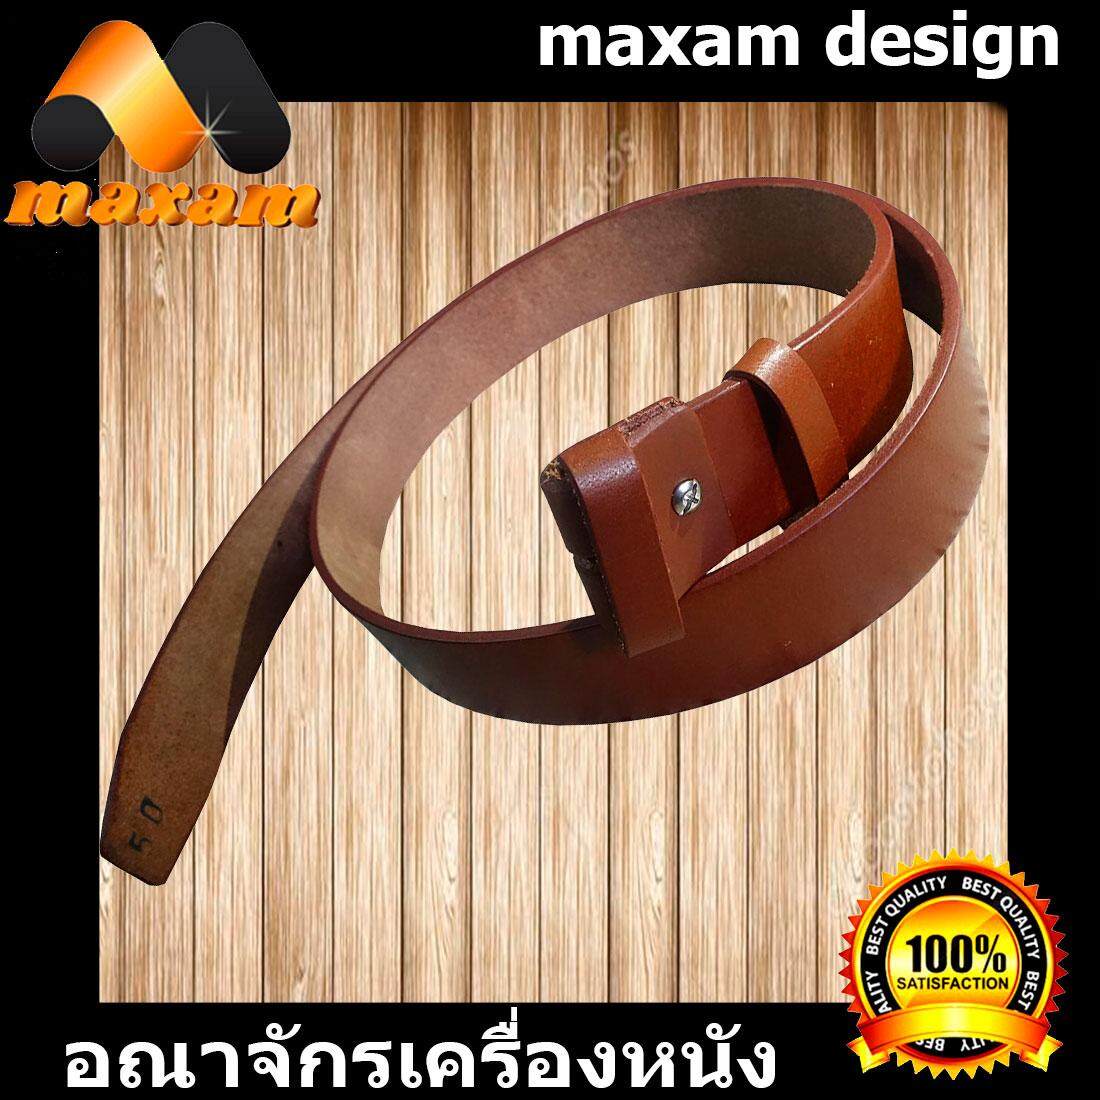 maxam design   ต้องใช้หนังแท้สิ! Genuine Cowhide Leather ใช้ของแท้ ใช้ทน ใช้นานใด้หลายปี นิศิตนักศึกษาชอบใช้  สายเข็มขัดหนังวัวอย่างแท้ๆ ยาวตลอดเส้น  50 นิ้ว เหมาะสำหรับท่านที่มีเอว 42-43-44-45 นิ้ว สีน้ำตาล   maxam design